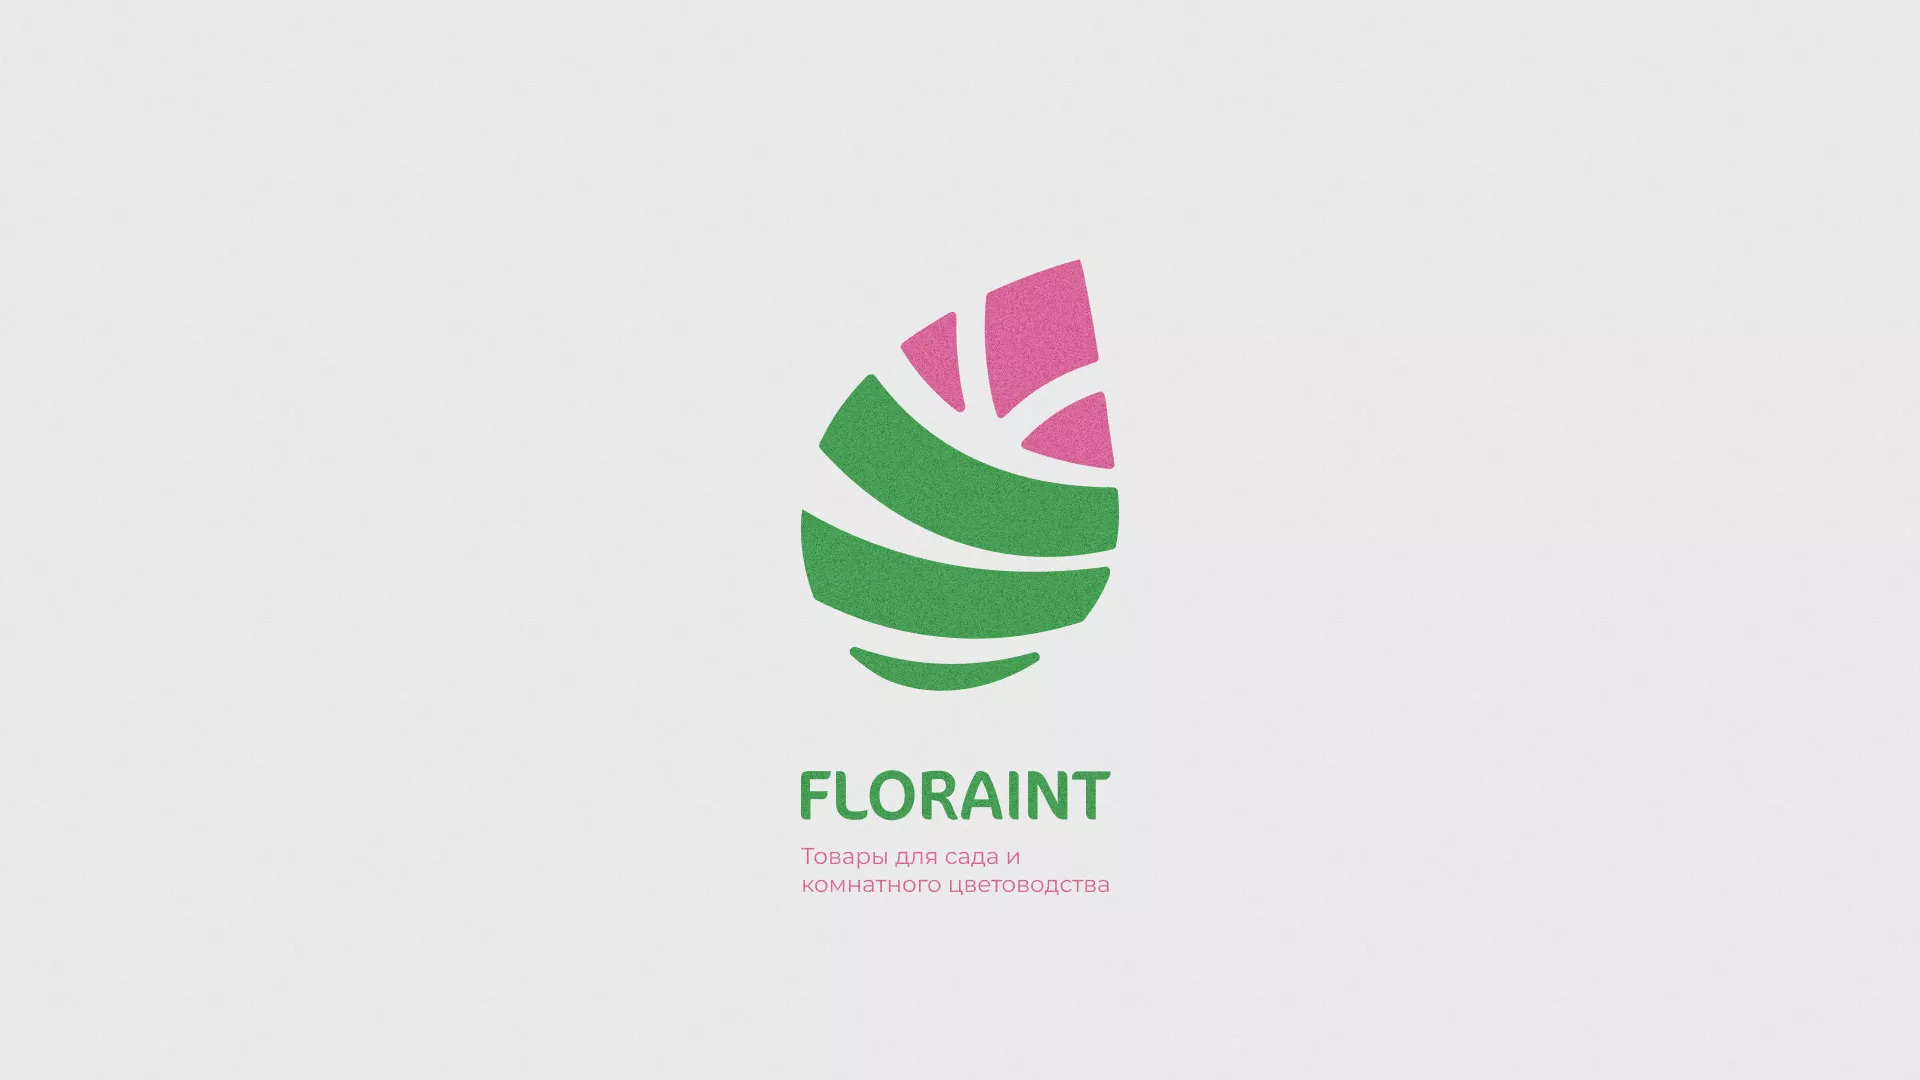 Разработка оформления профиля Instagram для магазина «Floraint» в Советском